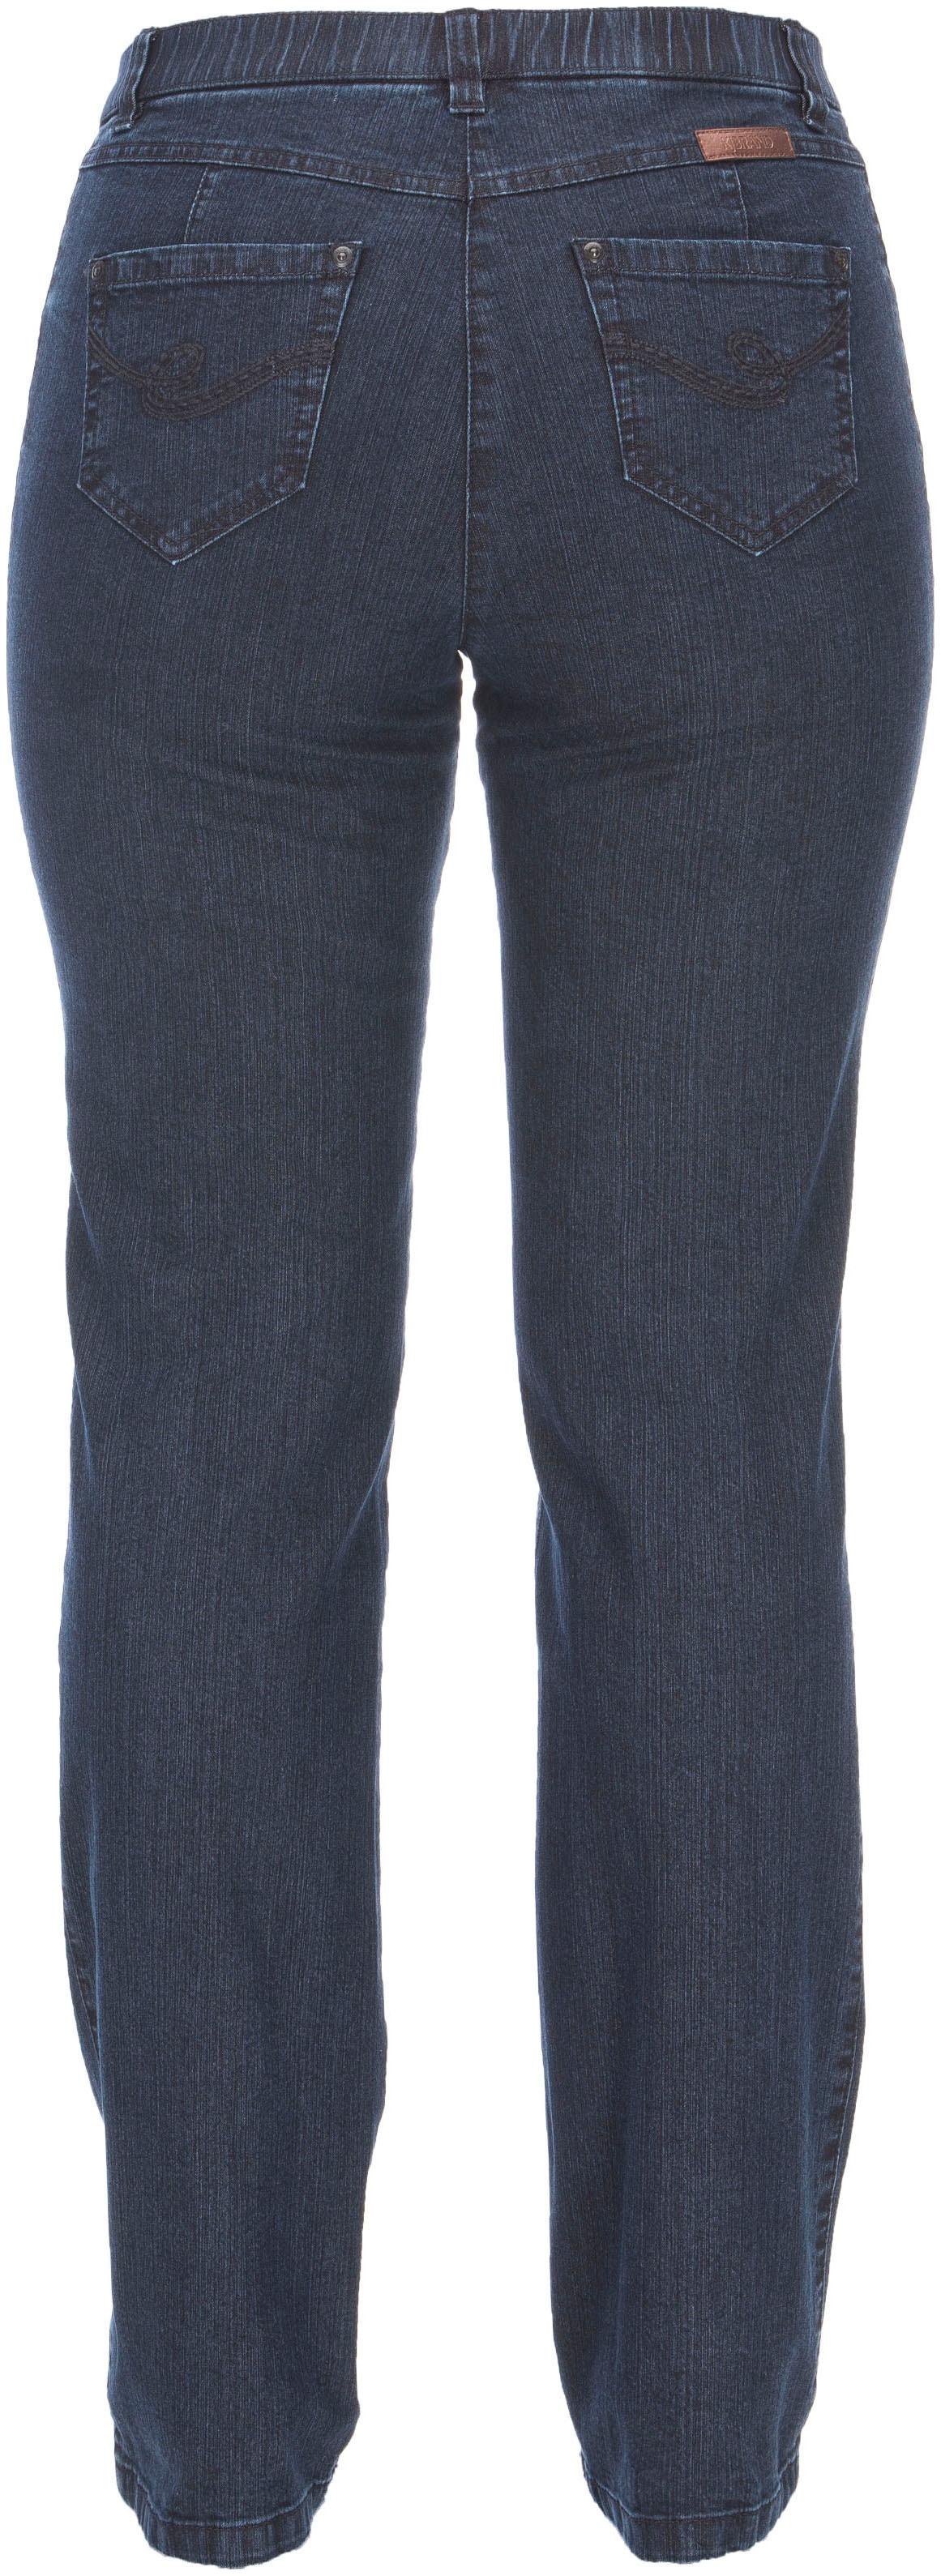 KjBRAND Stretch-Jeans »Betty Denim Stretch« kaufen